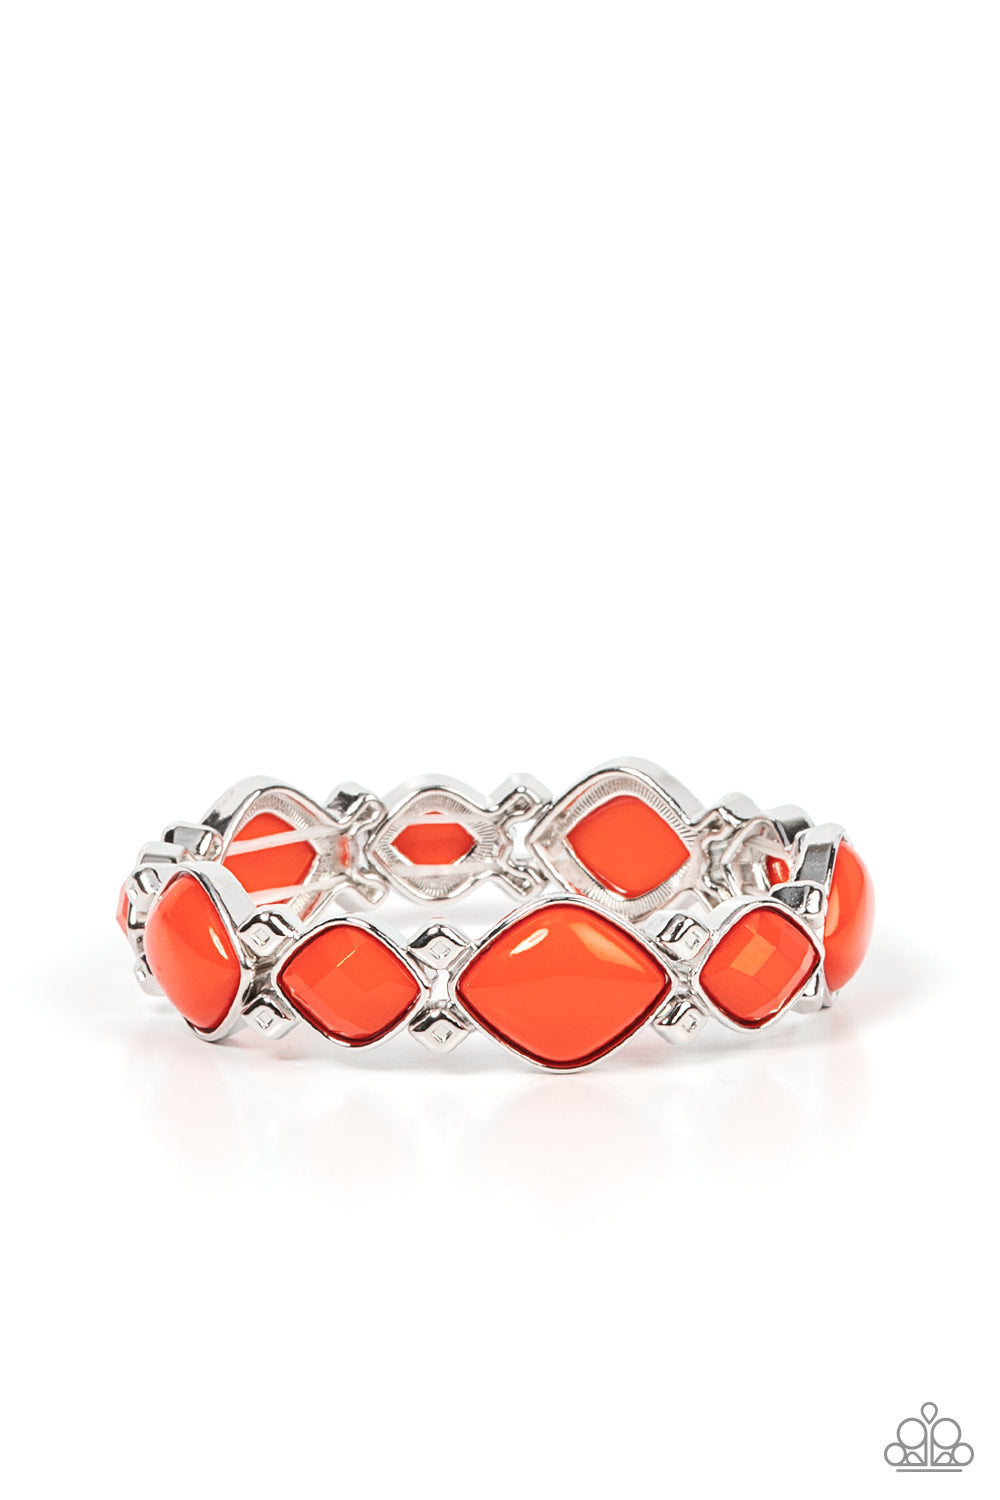 Boldly BEAD-azzled - Orange Diamond Shaped Beaded Paparazzi Stretch Bracelet